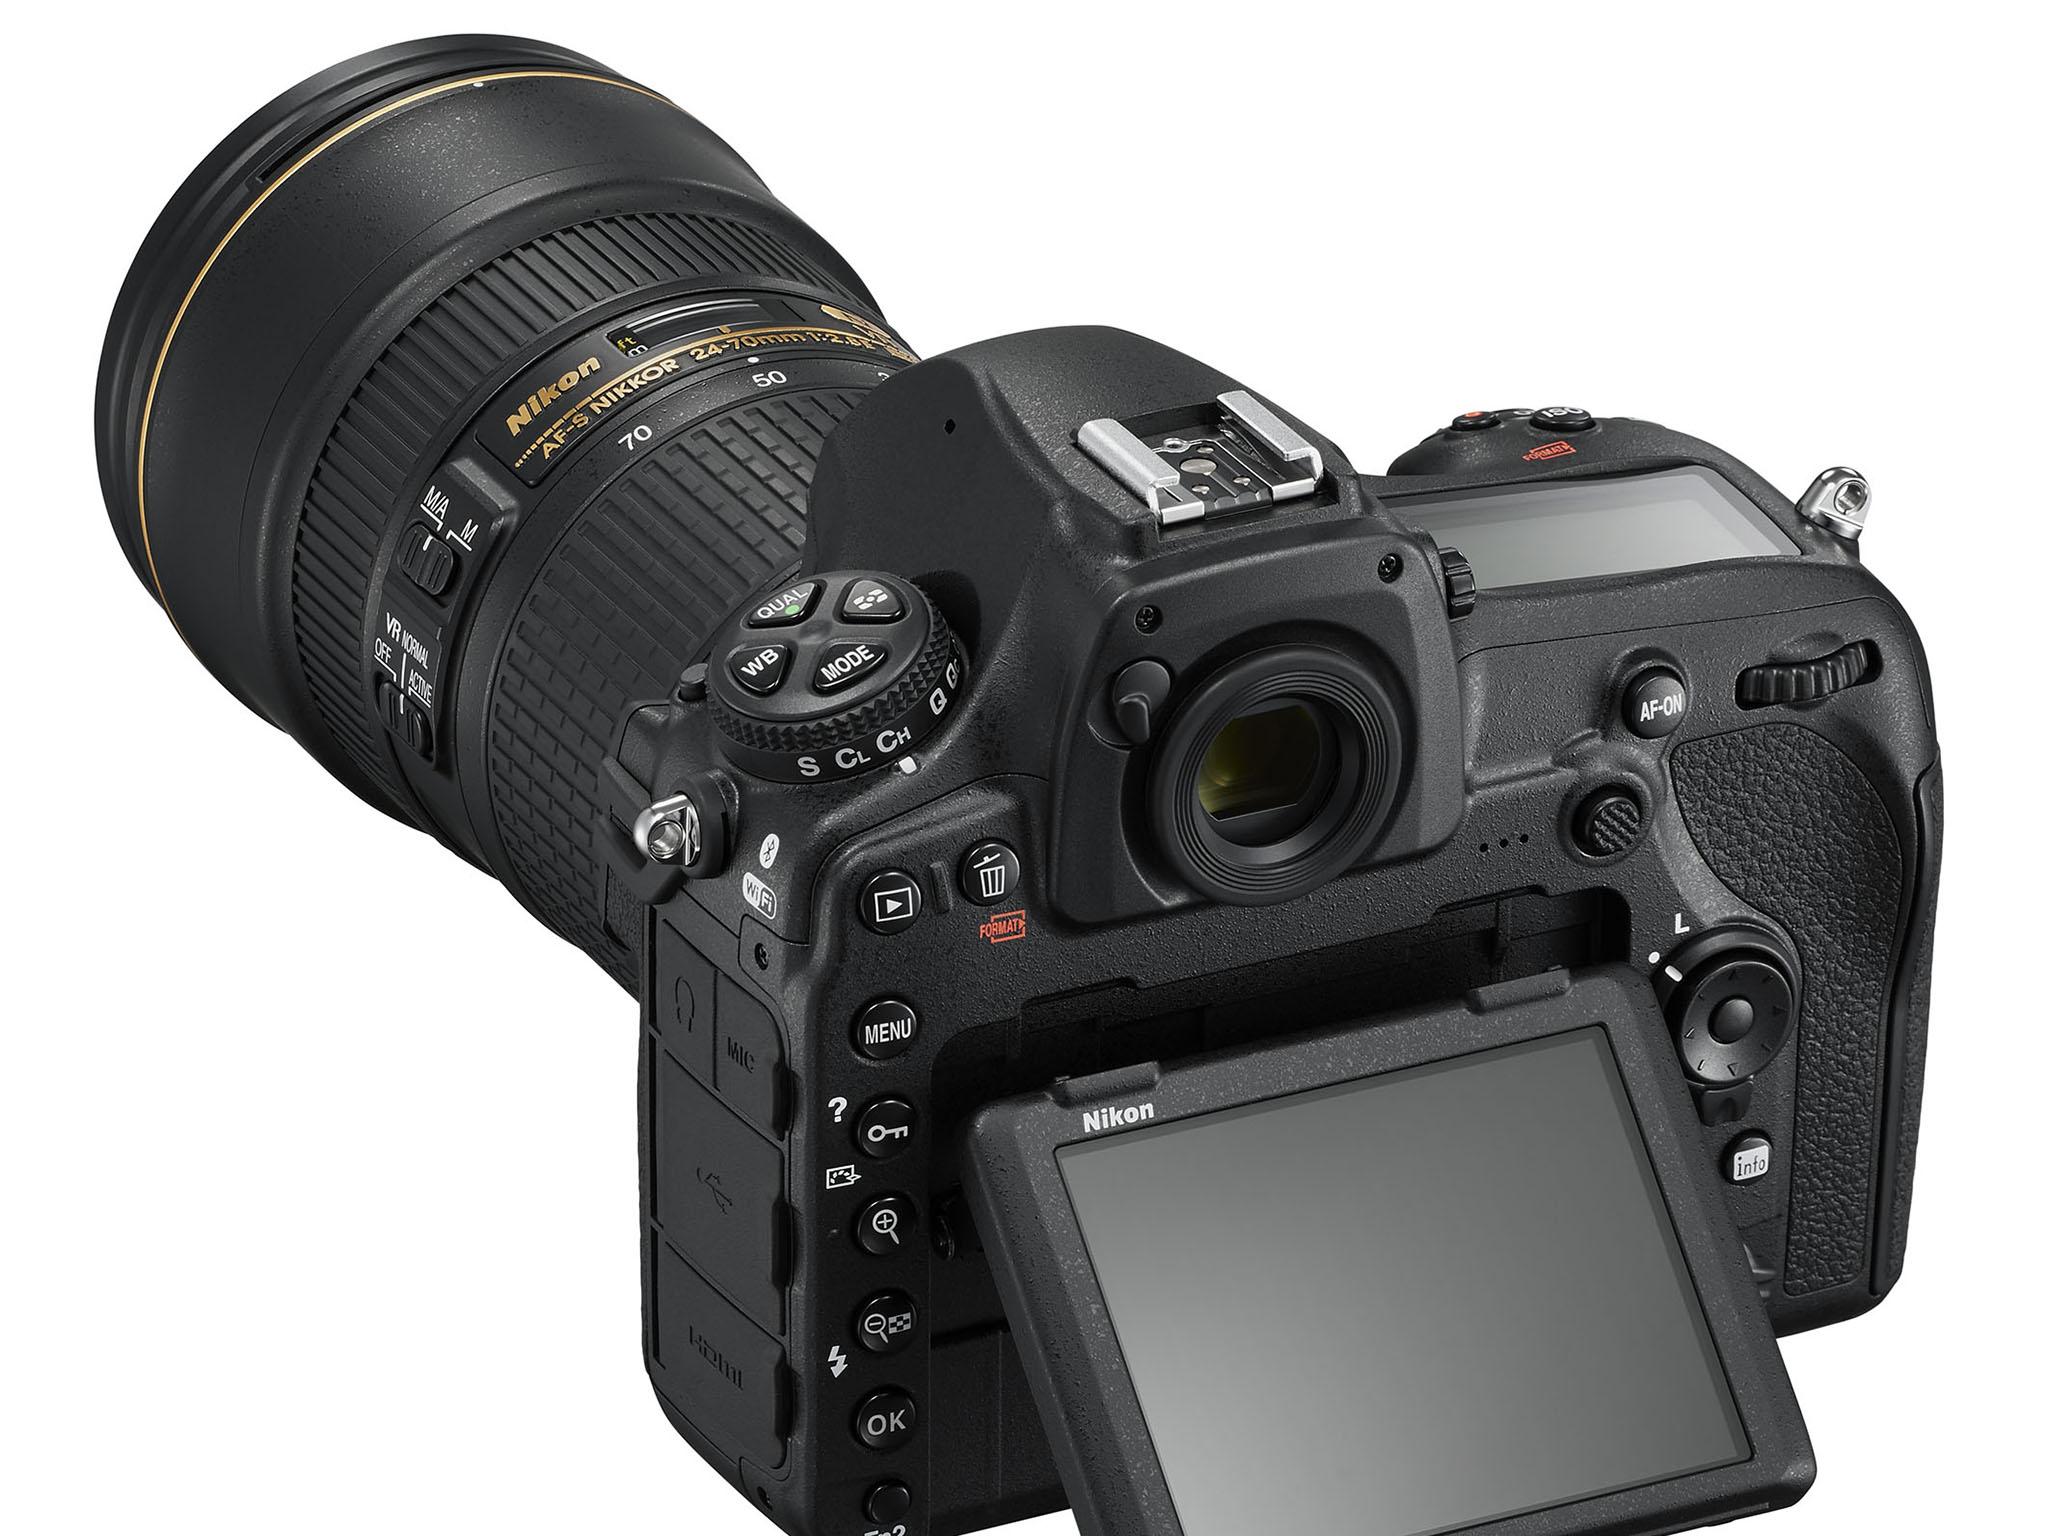 Nikon's new flagship DSLR, the D850